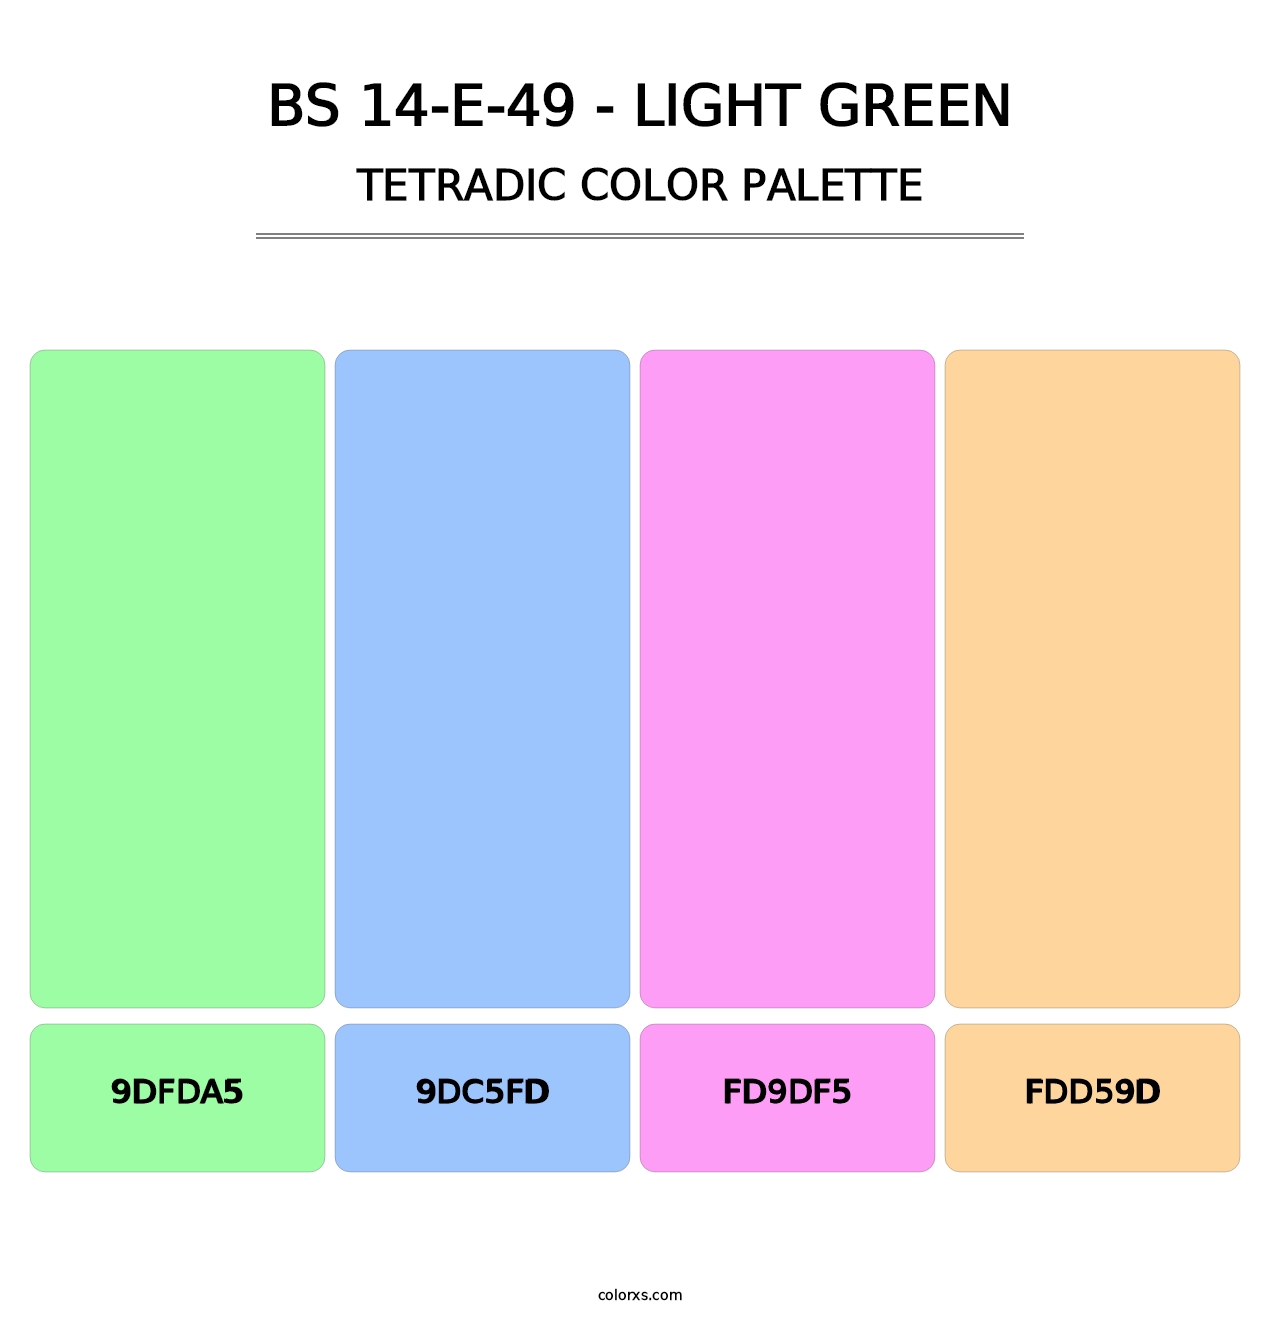 BS 14-E-49 - Light Green - Tetradic Color Palette